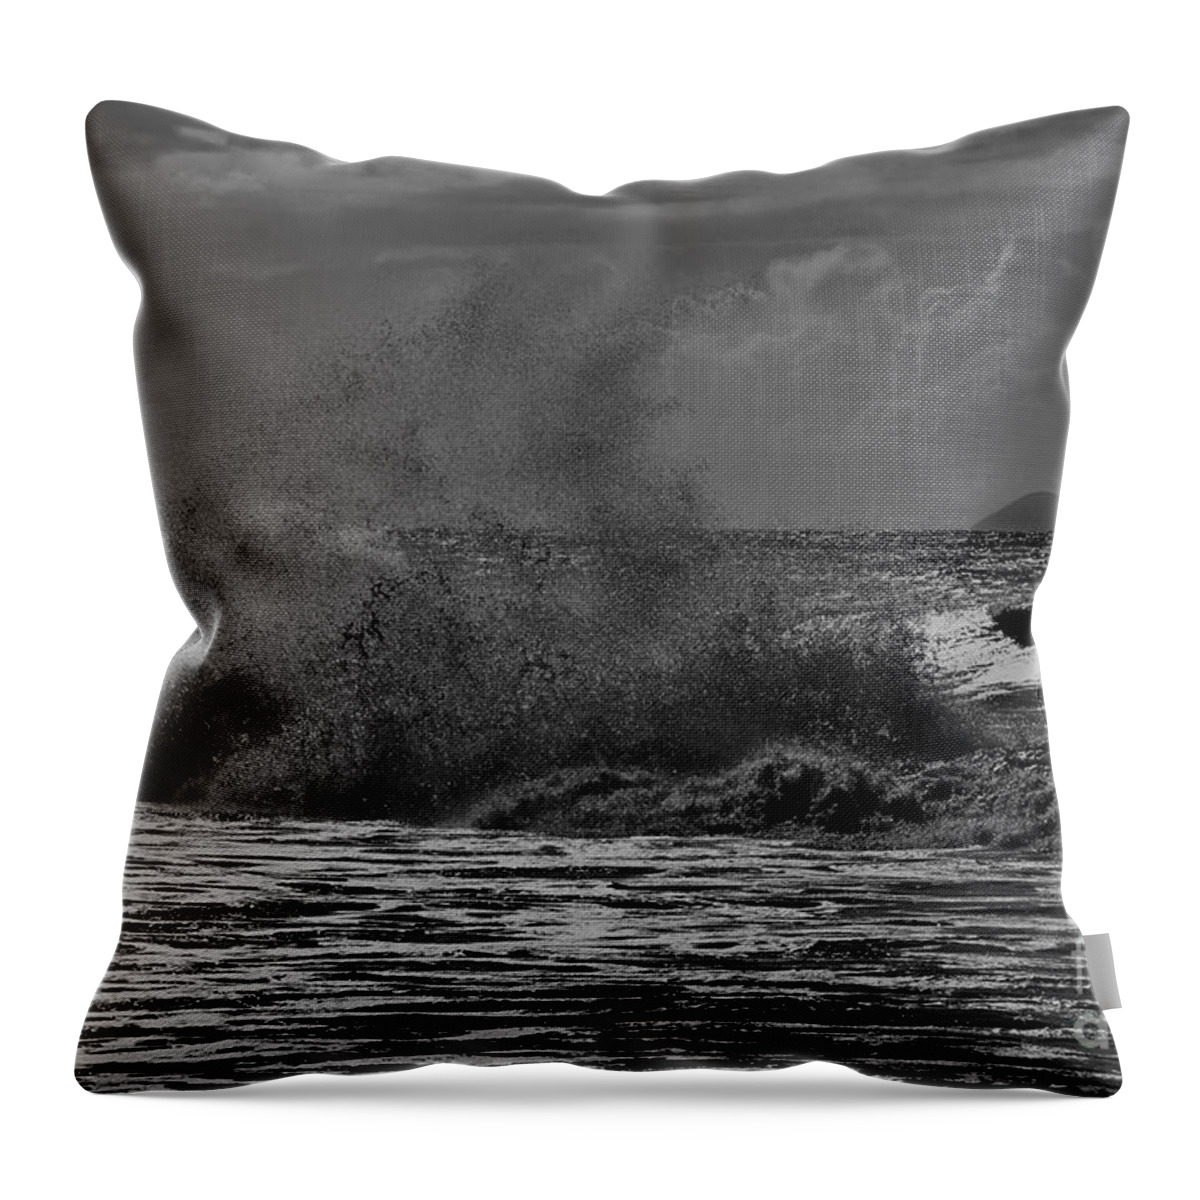 Nihau Throw Pillow featuring the photograph Ocean Spirits by Lehua Island by Debra Banks